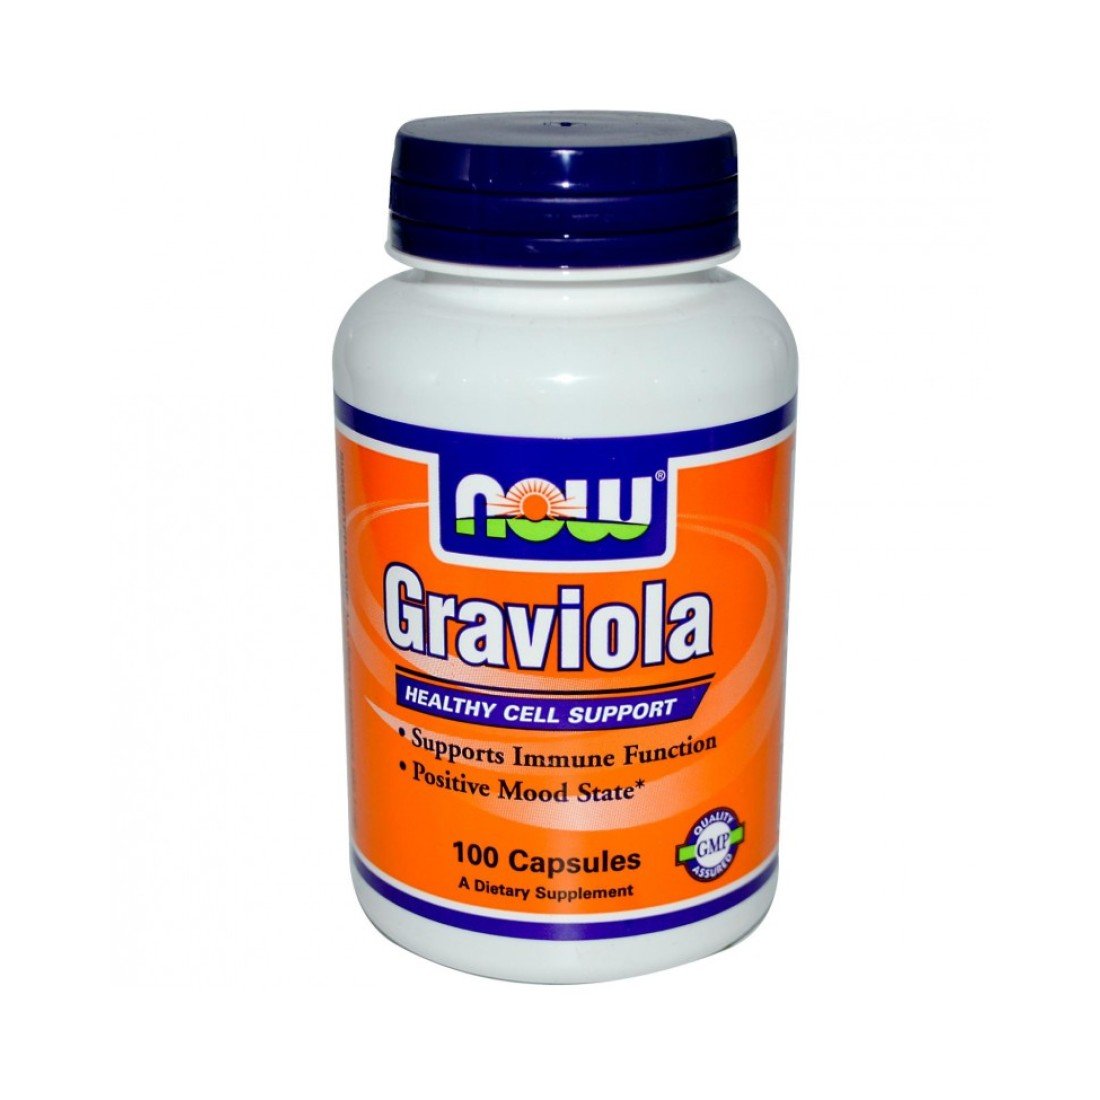 Graviola 500 MG. Гравиола / Graviola 100 капс.. Now foods, ПАБК, 500 мг, 100 капсул. Uniforce селениум 100 мг 100 капсул, (капсулы). Витамин 5000 купить в аптеке